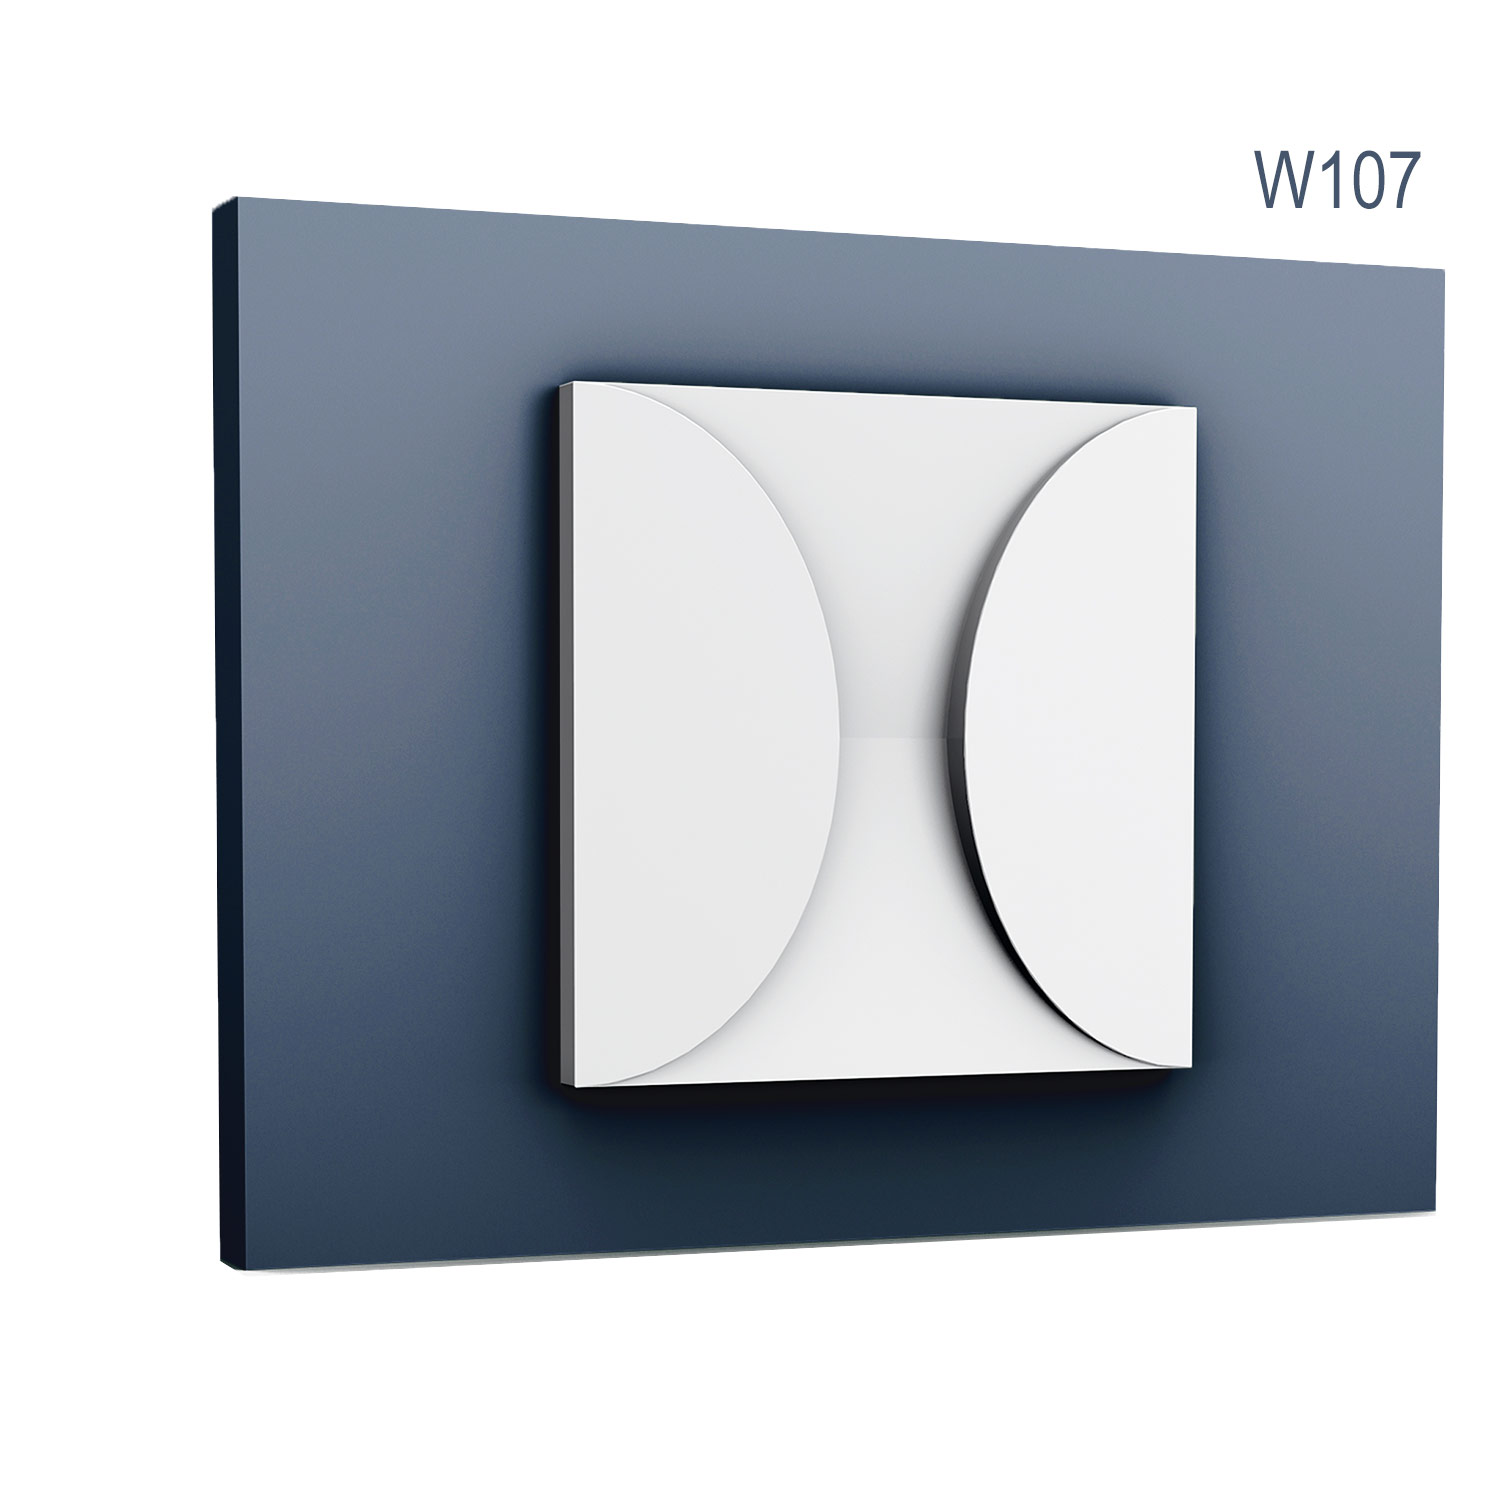 Panel Modern W107, Dimensiuni: 33.3 X 33.3 X 2.9 cm, Orac Decor Orac Decor